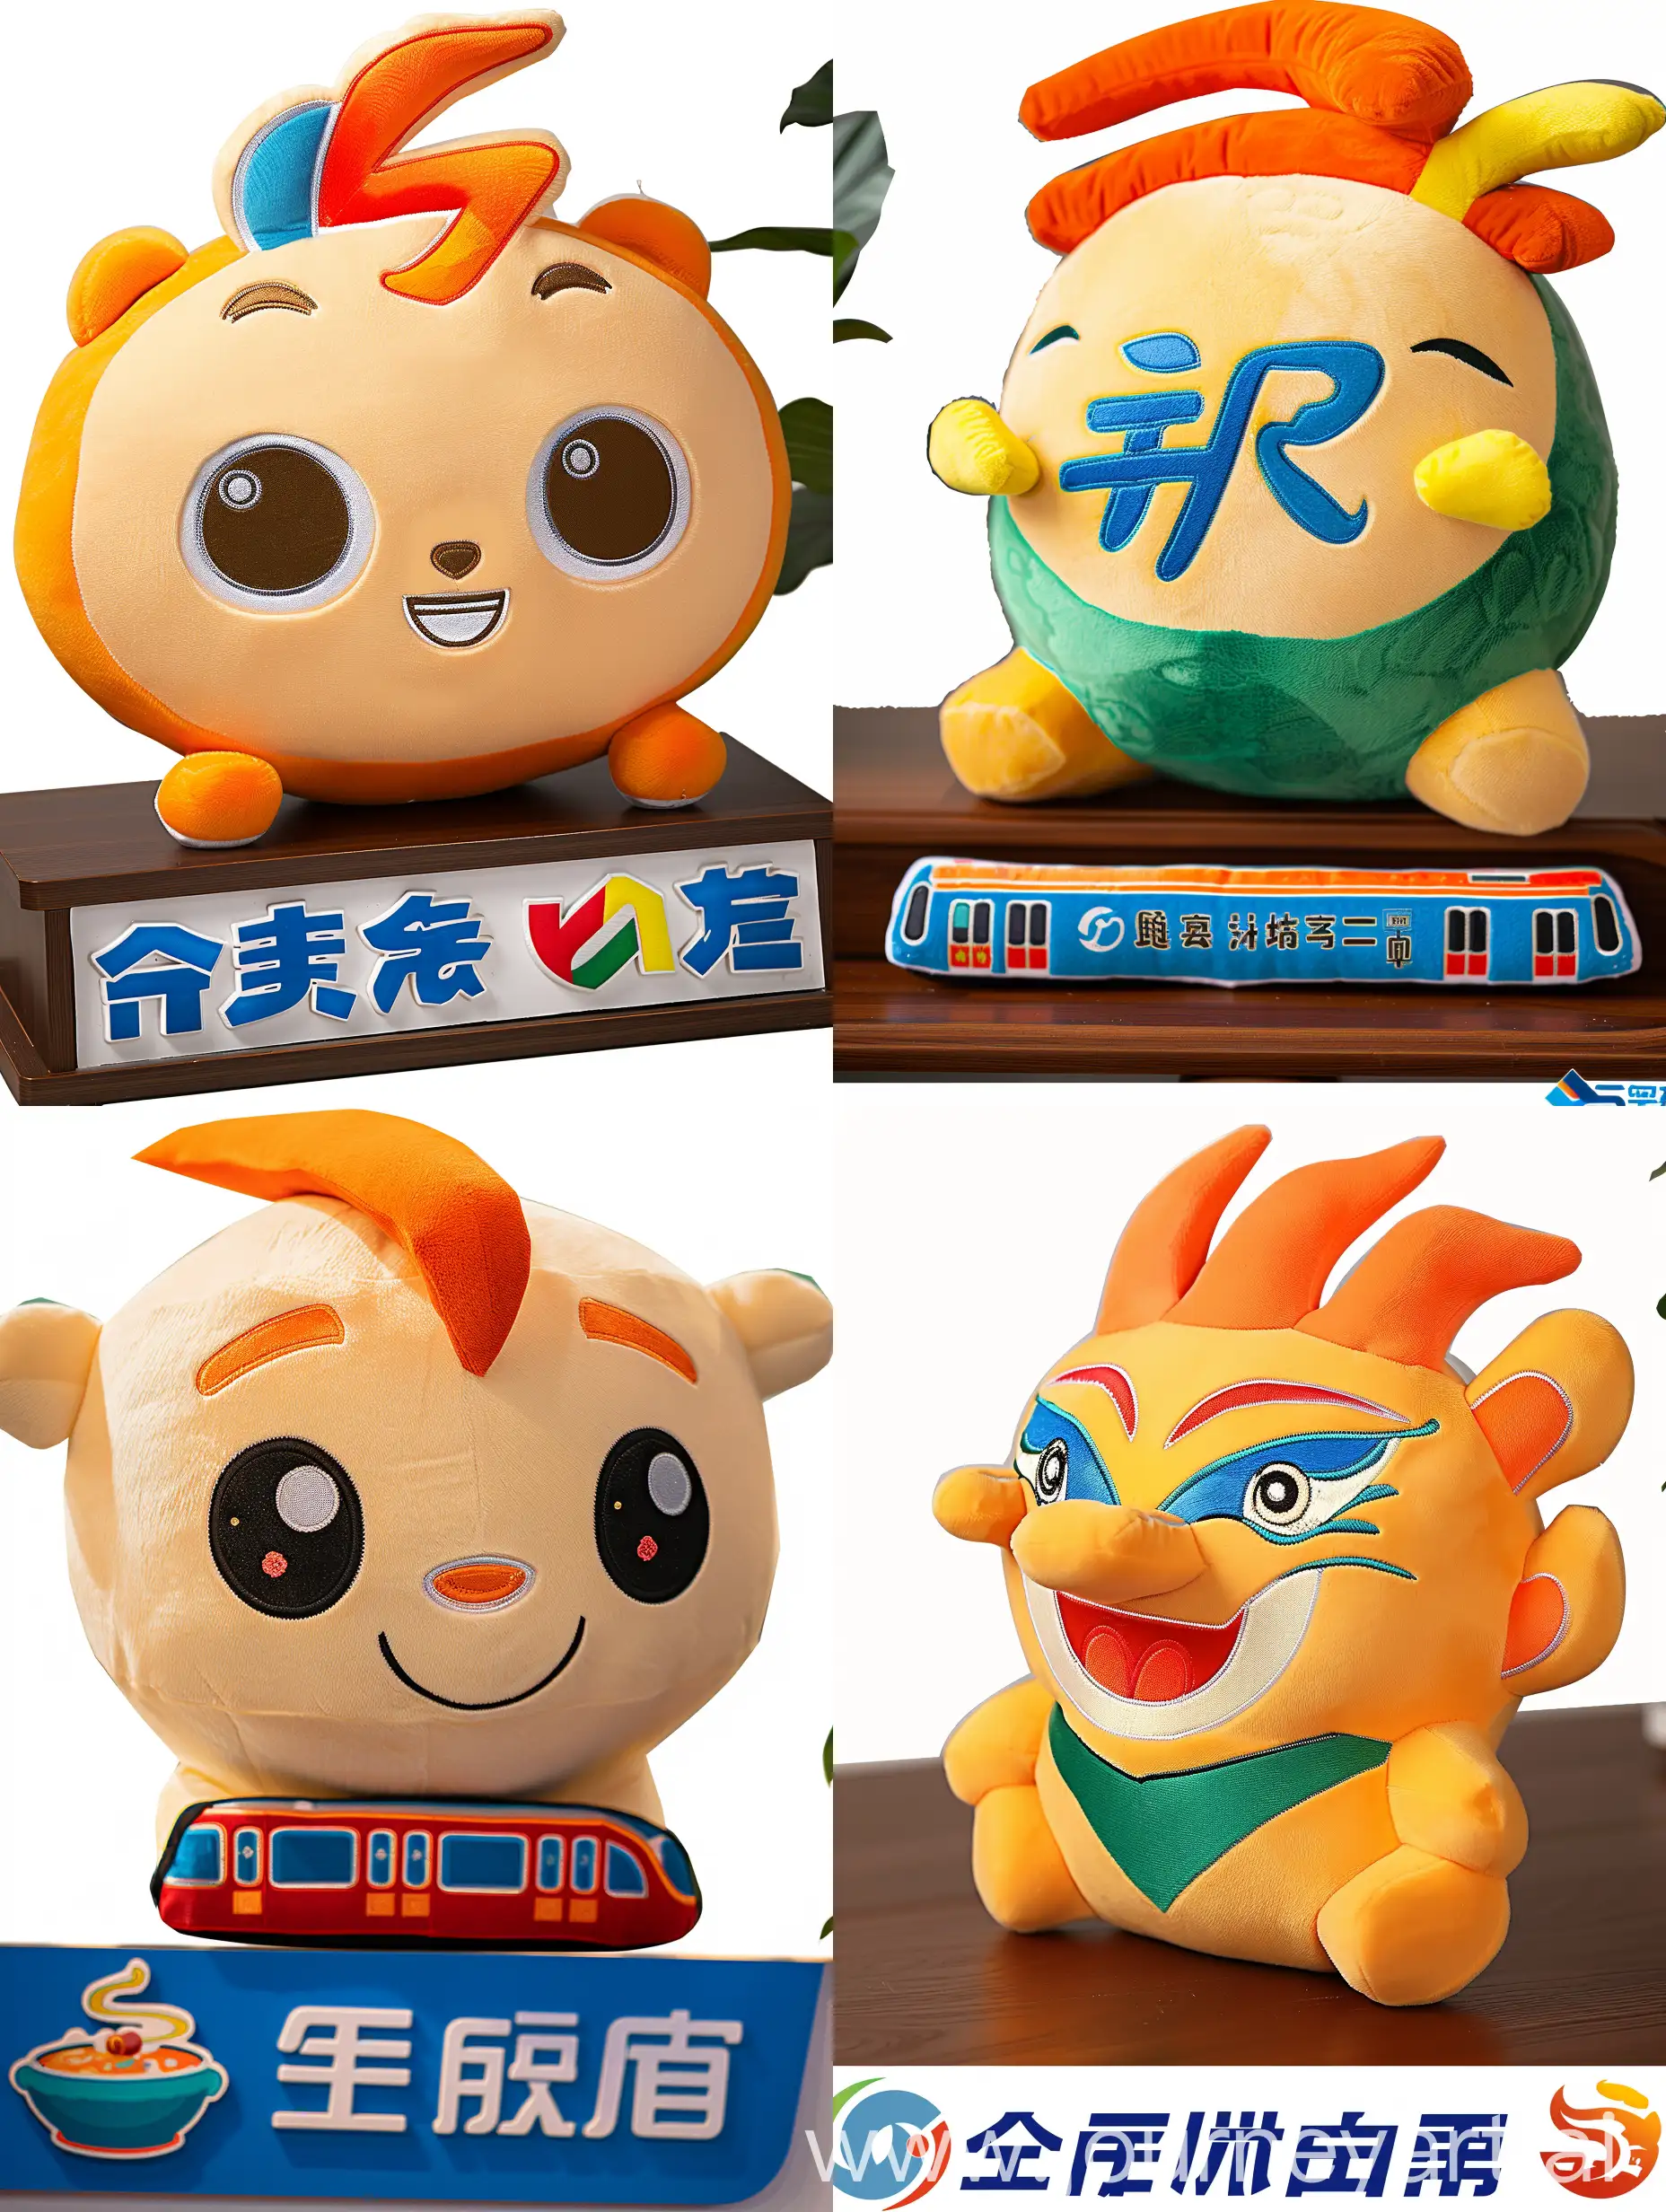 根据logo，生成包含重庆电视台元素的毛绒玩具形象，最好还能植入重庆的元素，如火锅、轻轨等